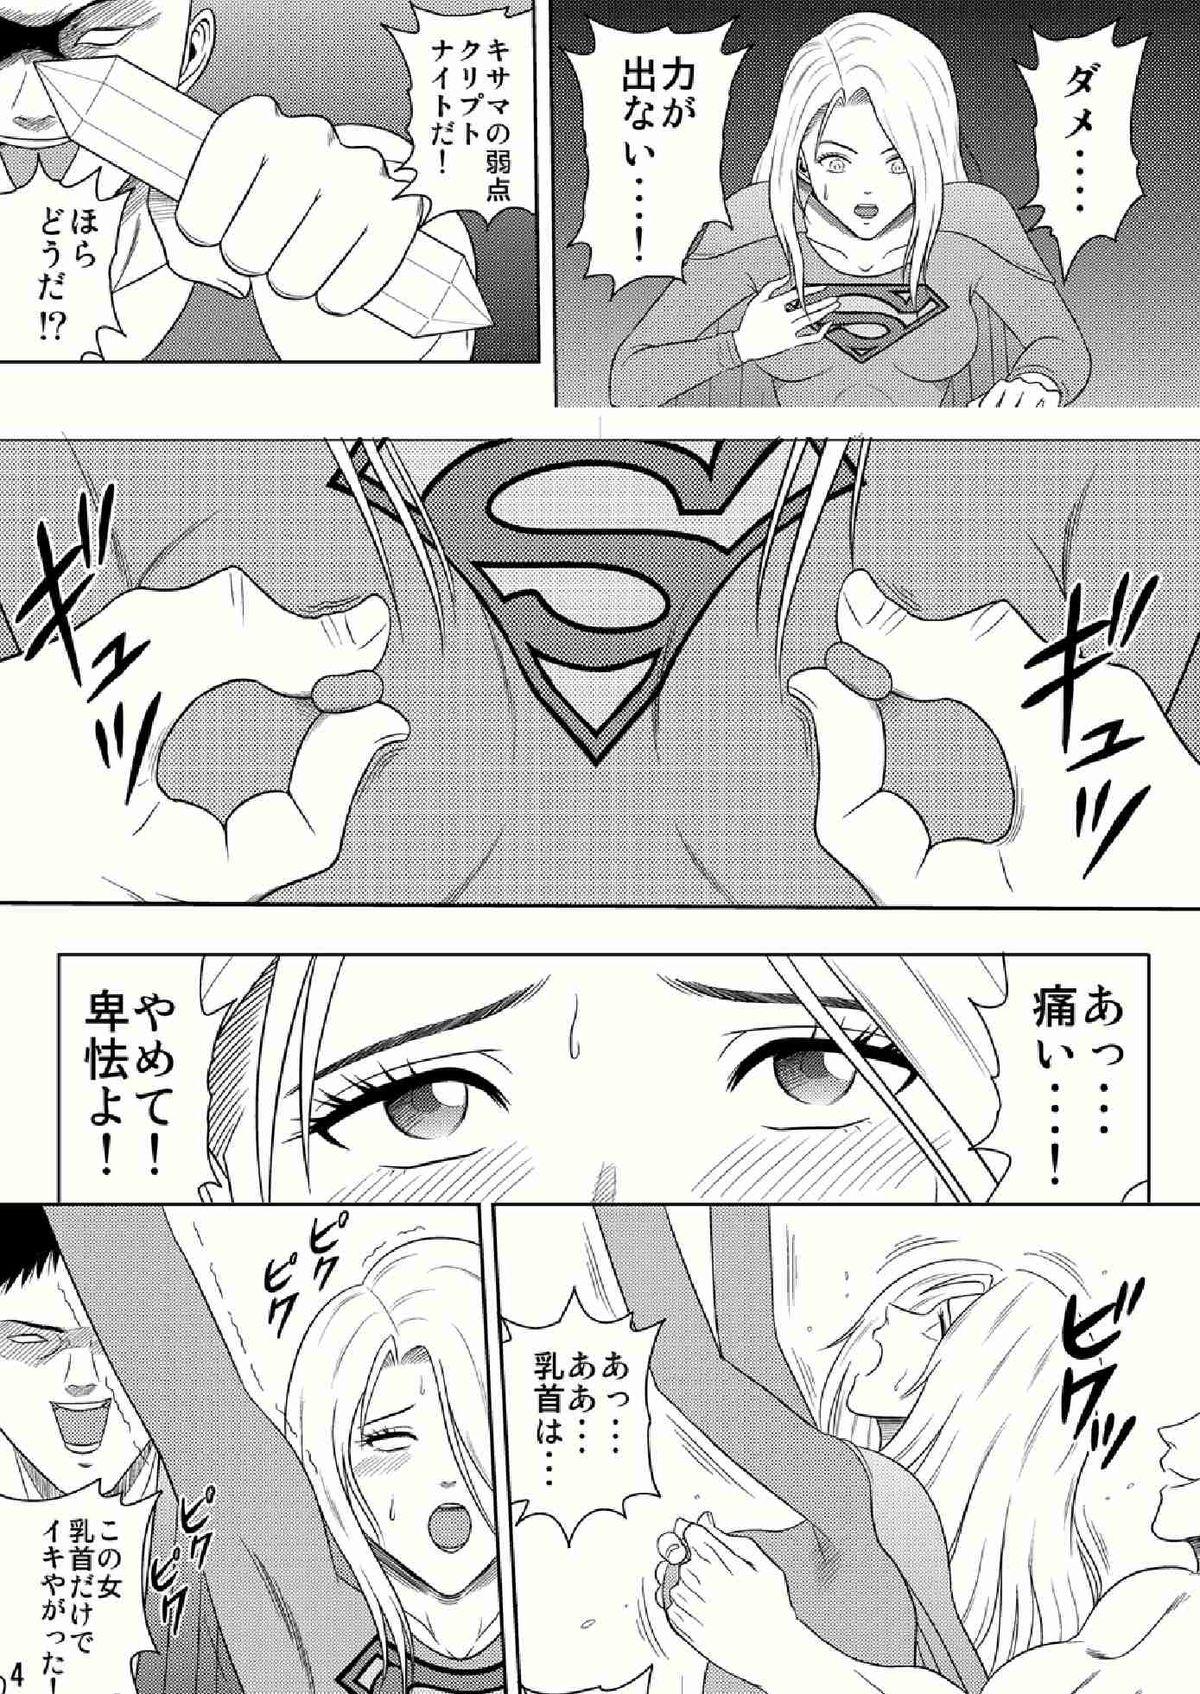 And Toukikoubou vol.2 SUPER GIRL Lez Fuck - Page 4